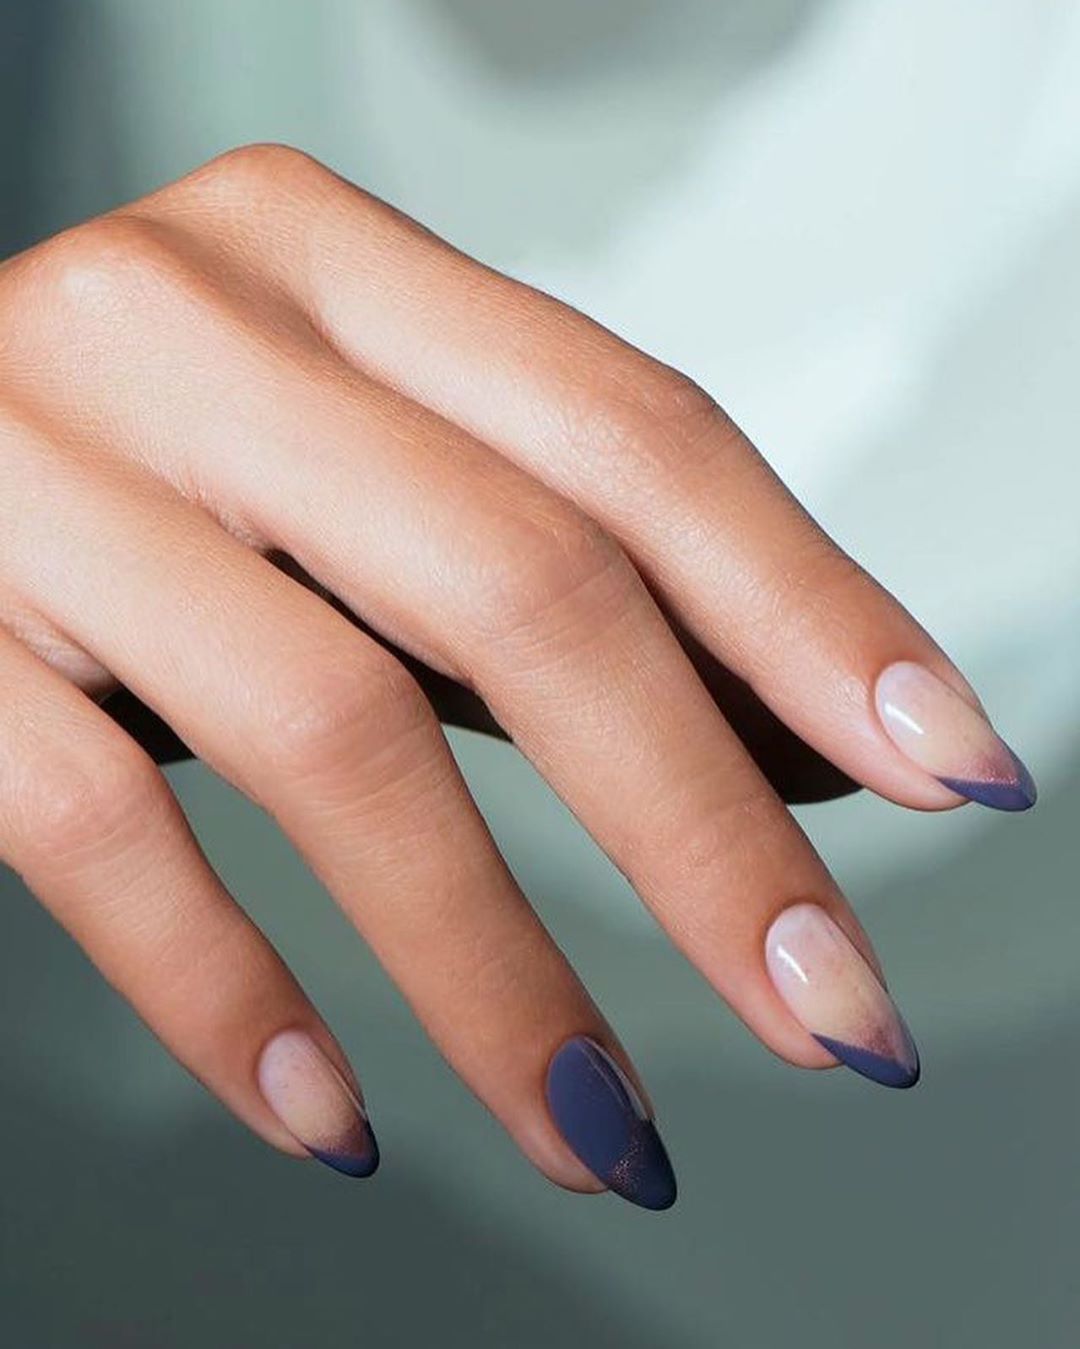 14 beauty nails ideas